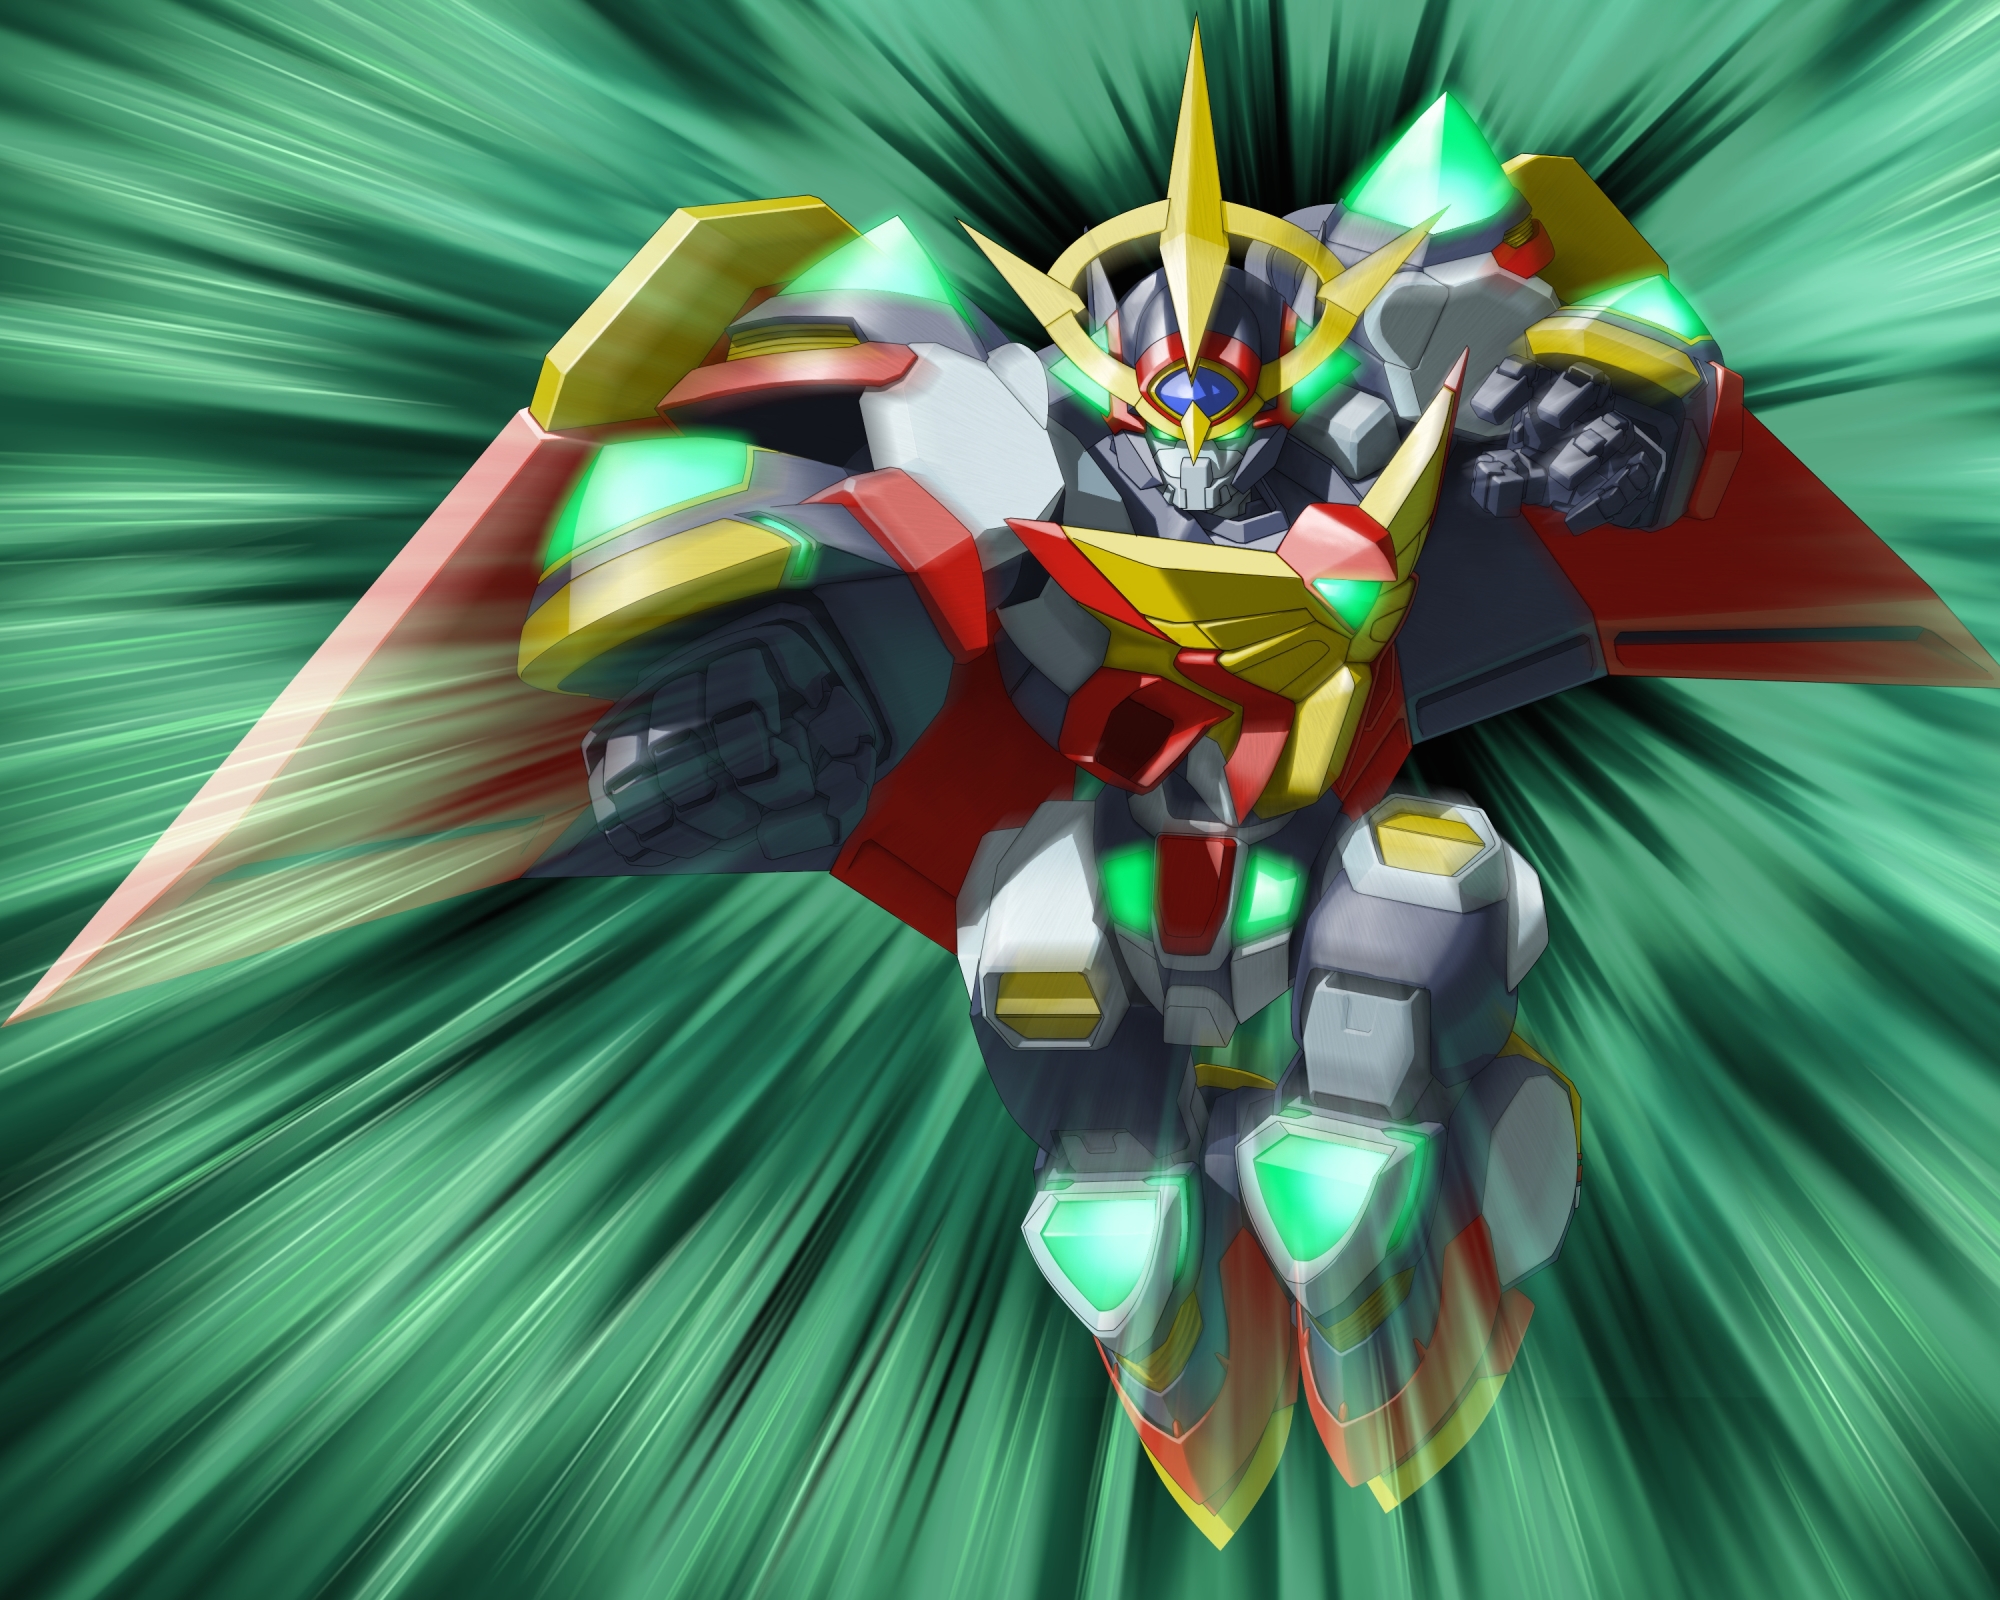 Anime 2000x1600 Excellence Lightning anime mechs Super Robot Taisen artwork digital art fan art